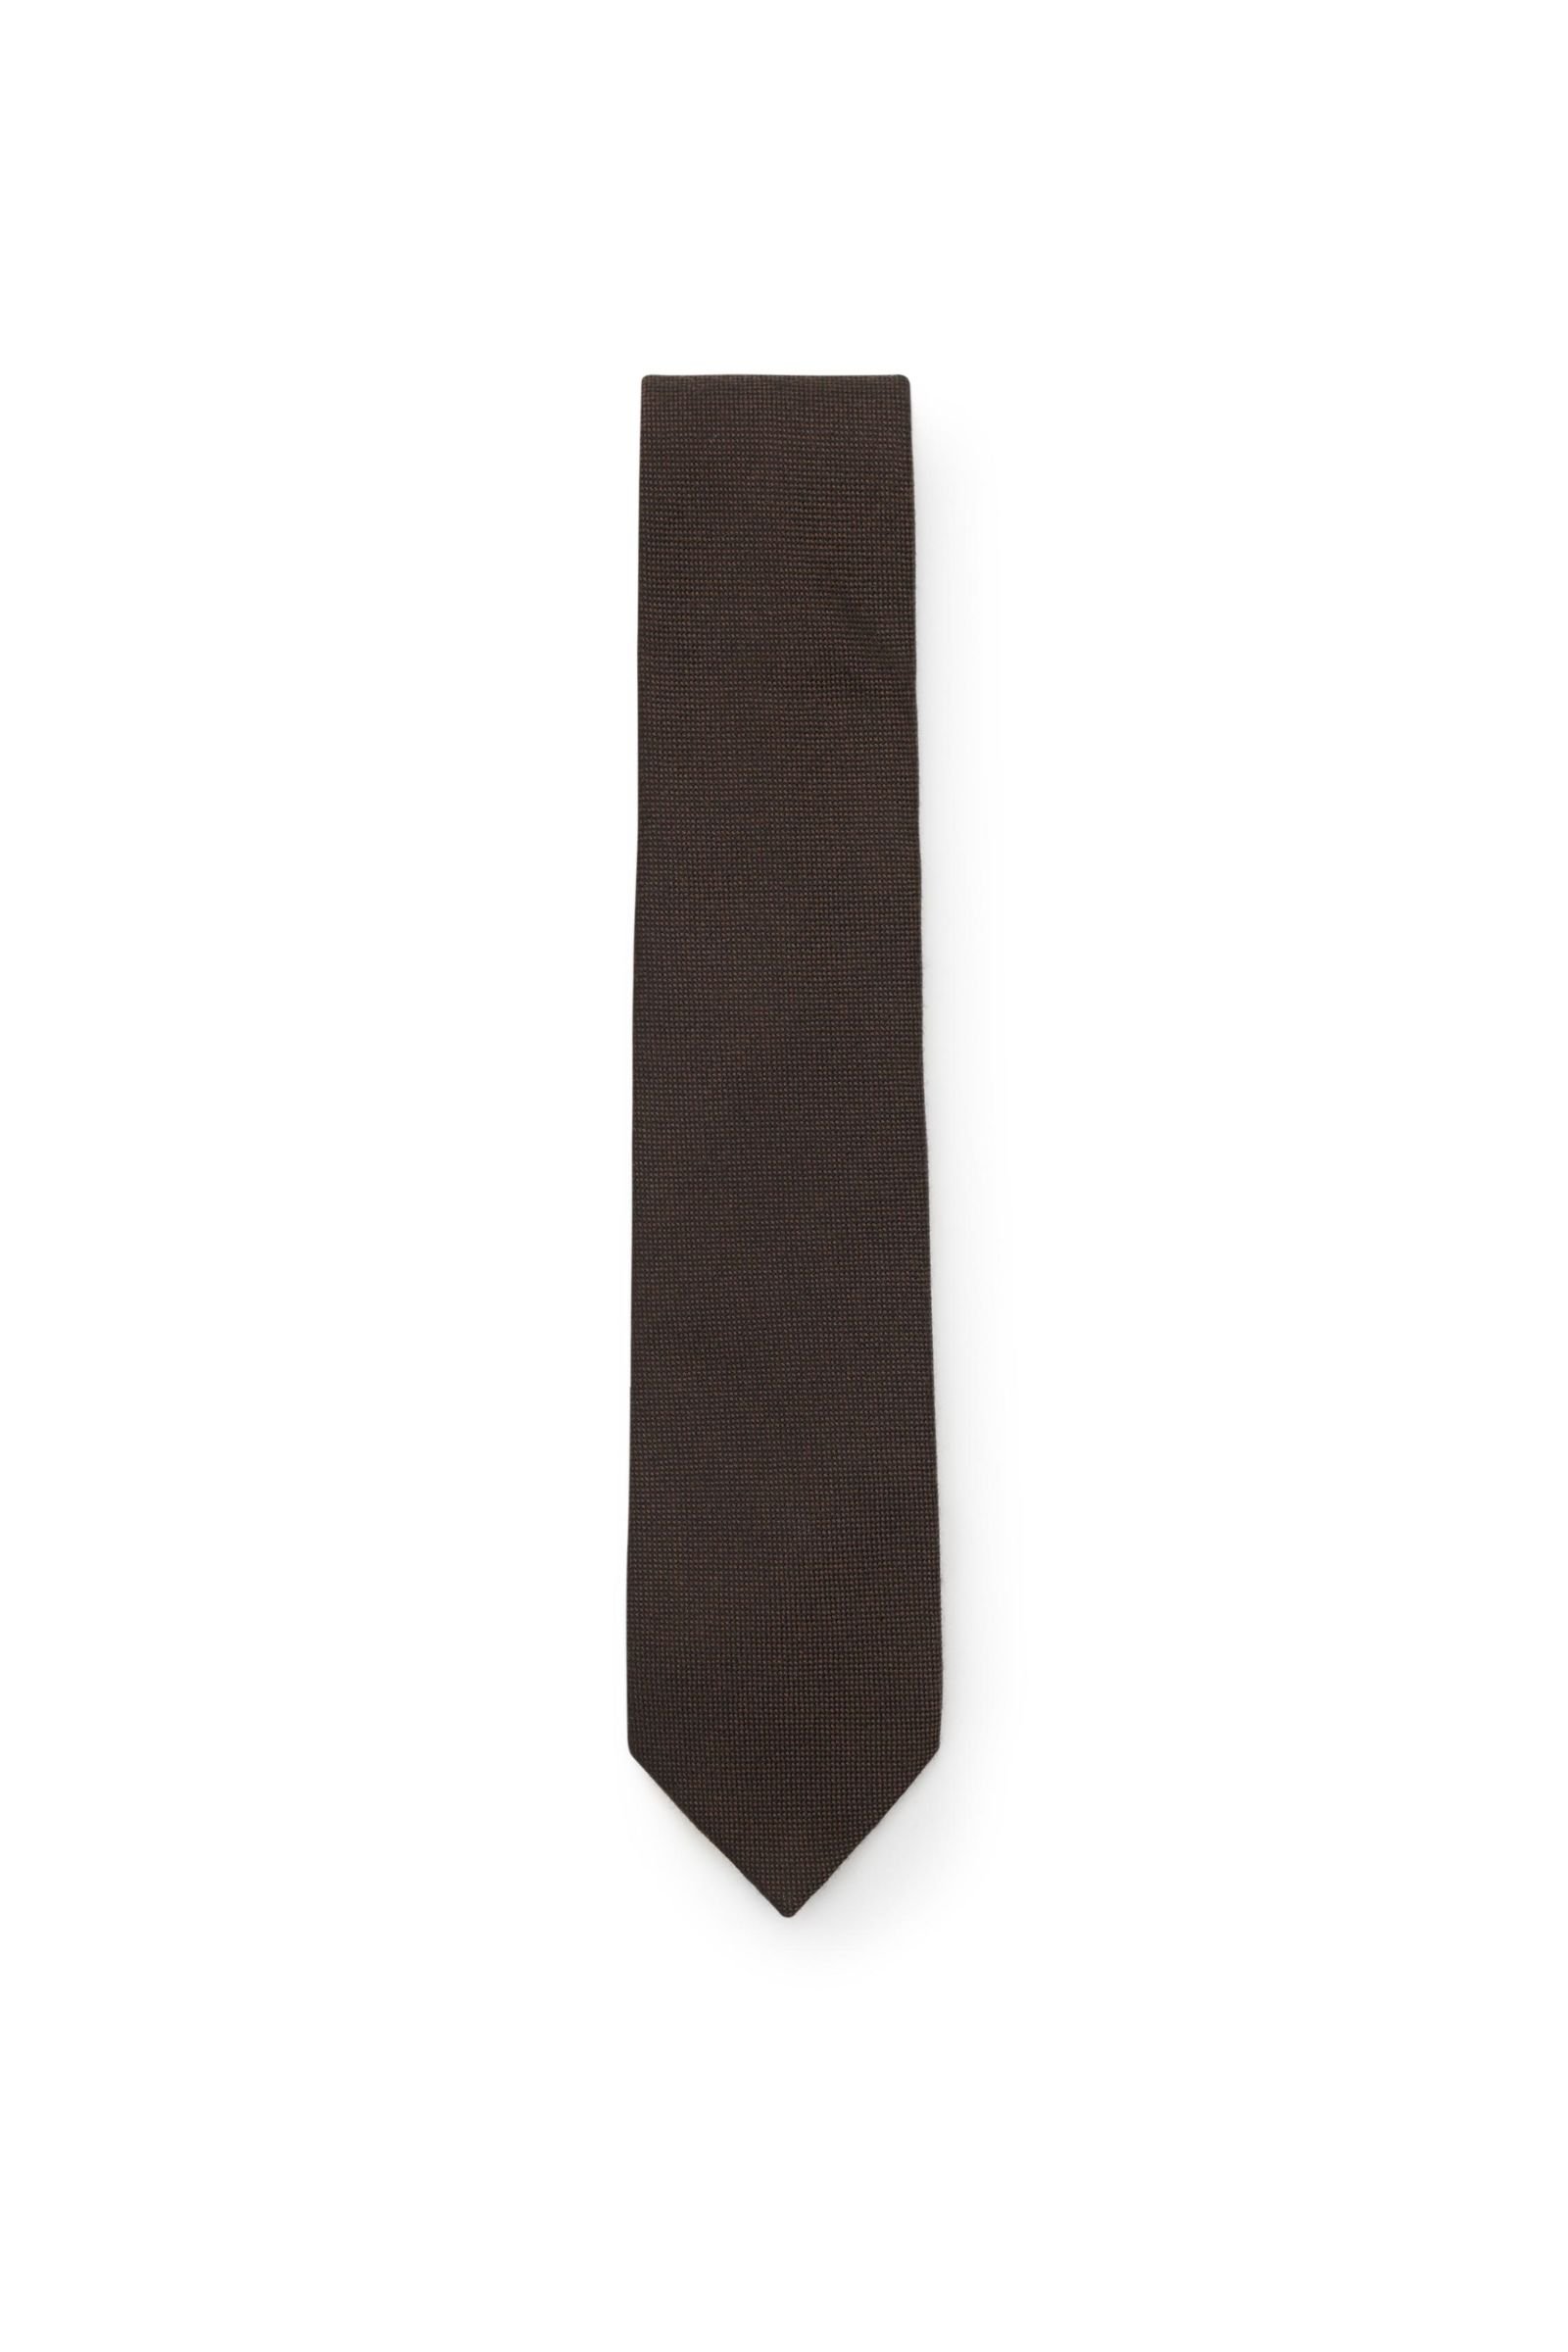 Cashmere Krawatte dunkelbraun